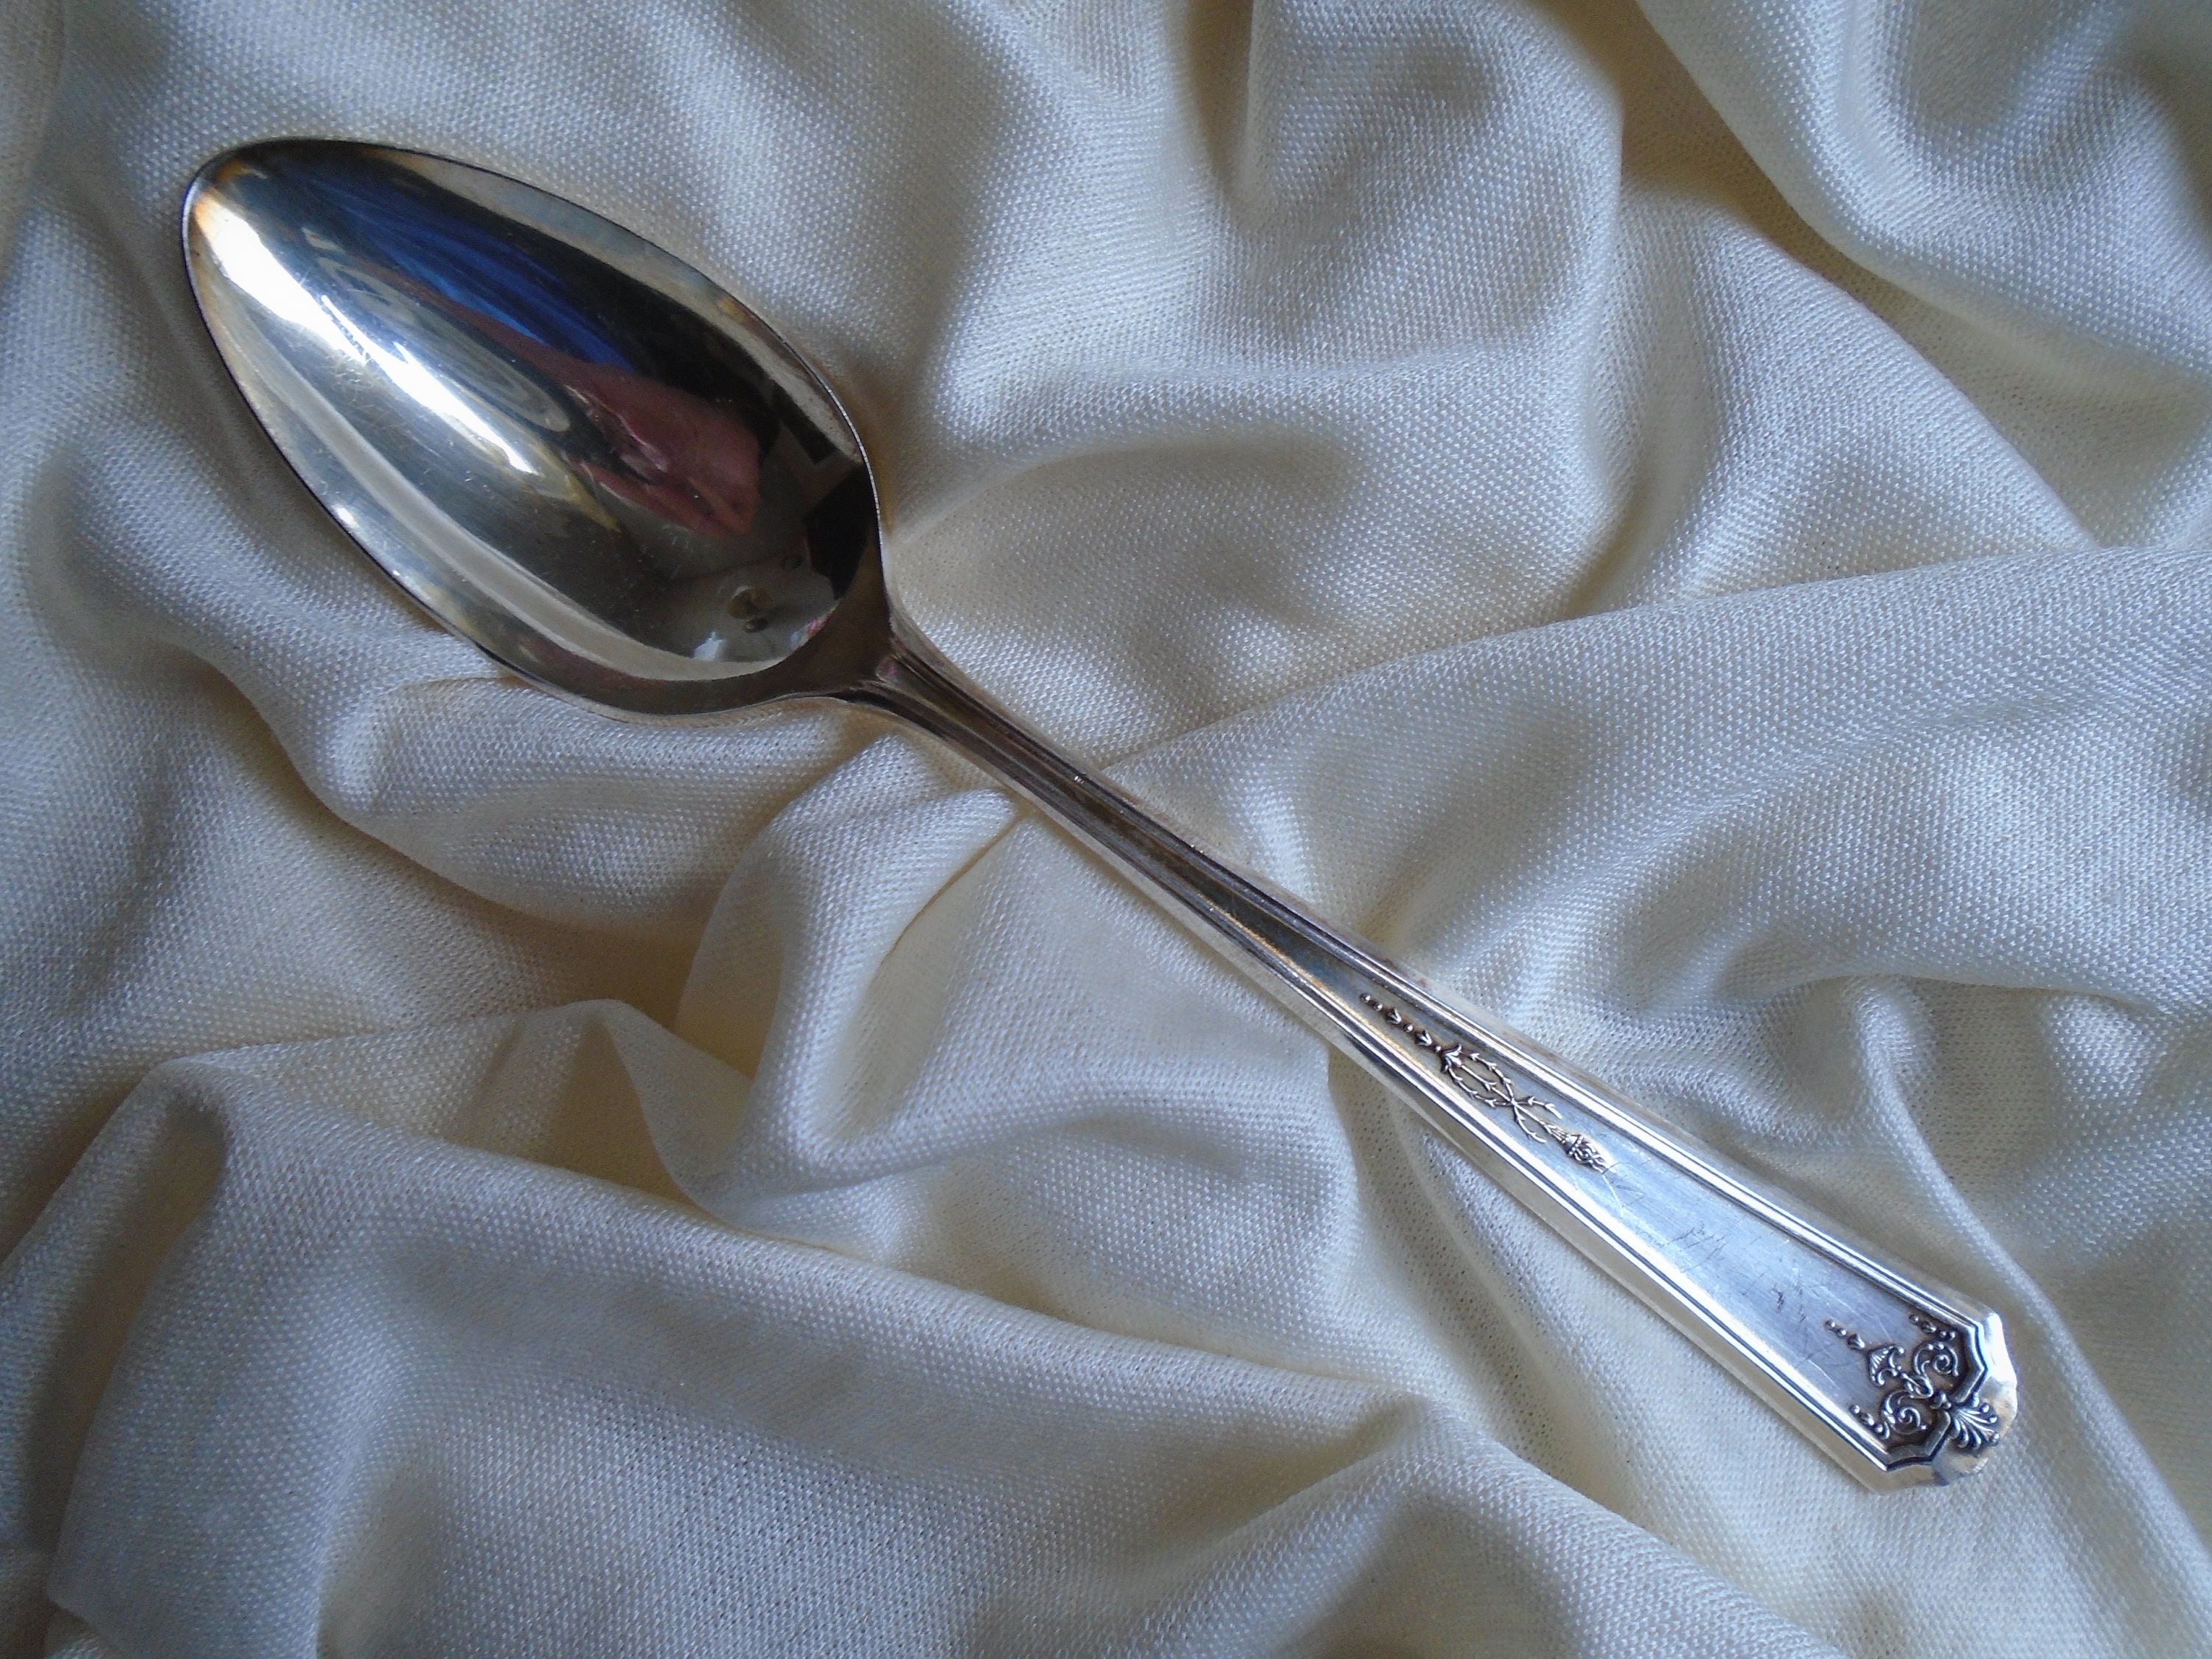 Oneida Tudor Queen Bess 1924 tablespoon 7 7/8 inches no mono 